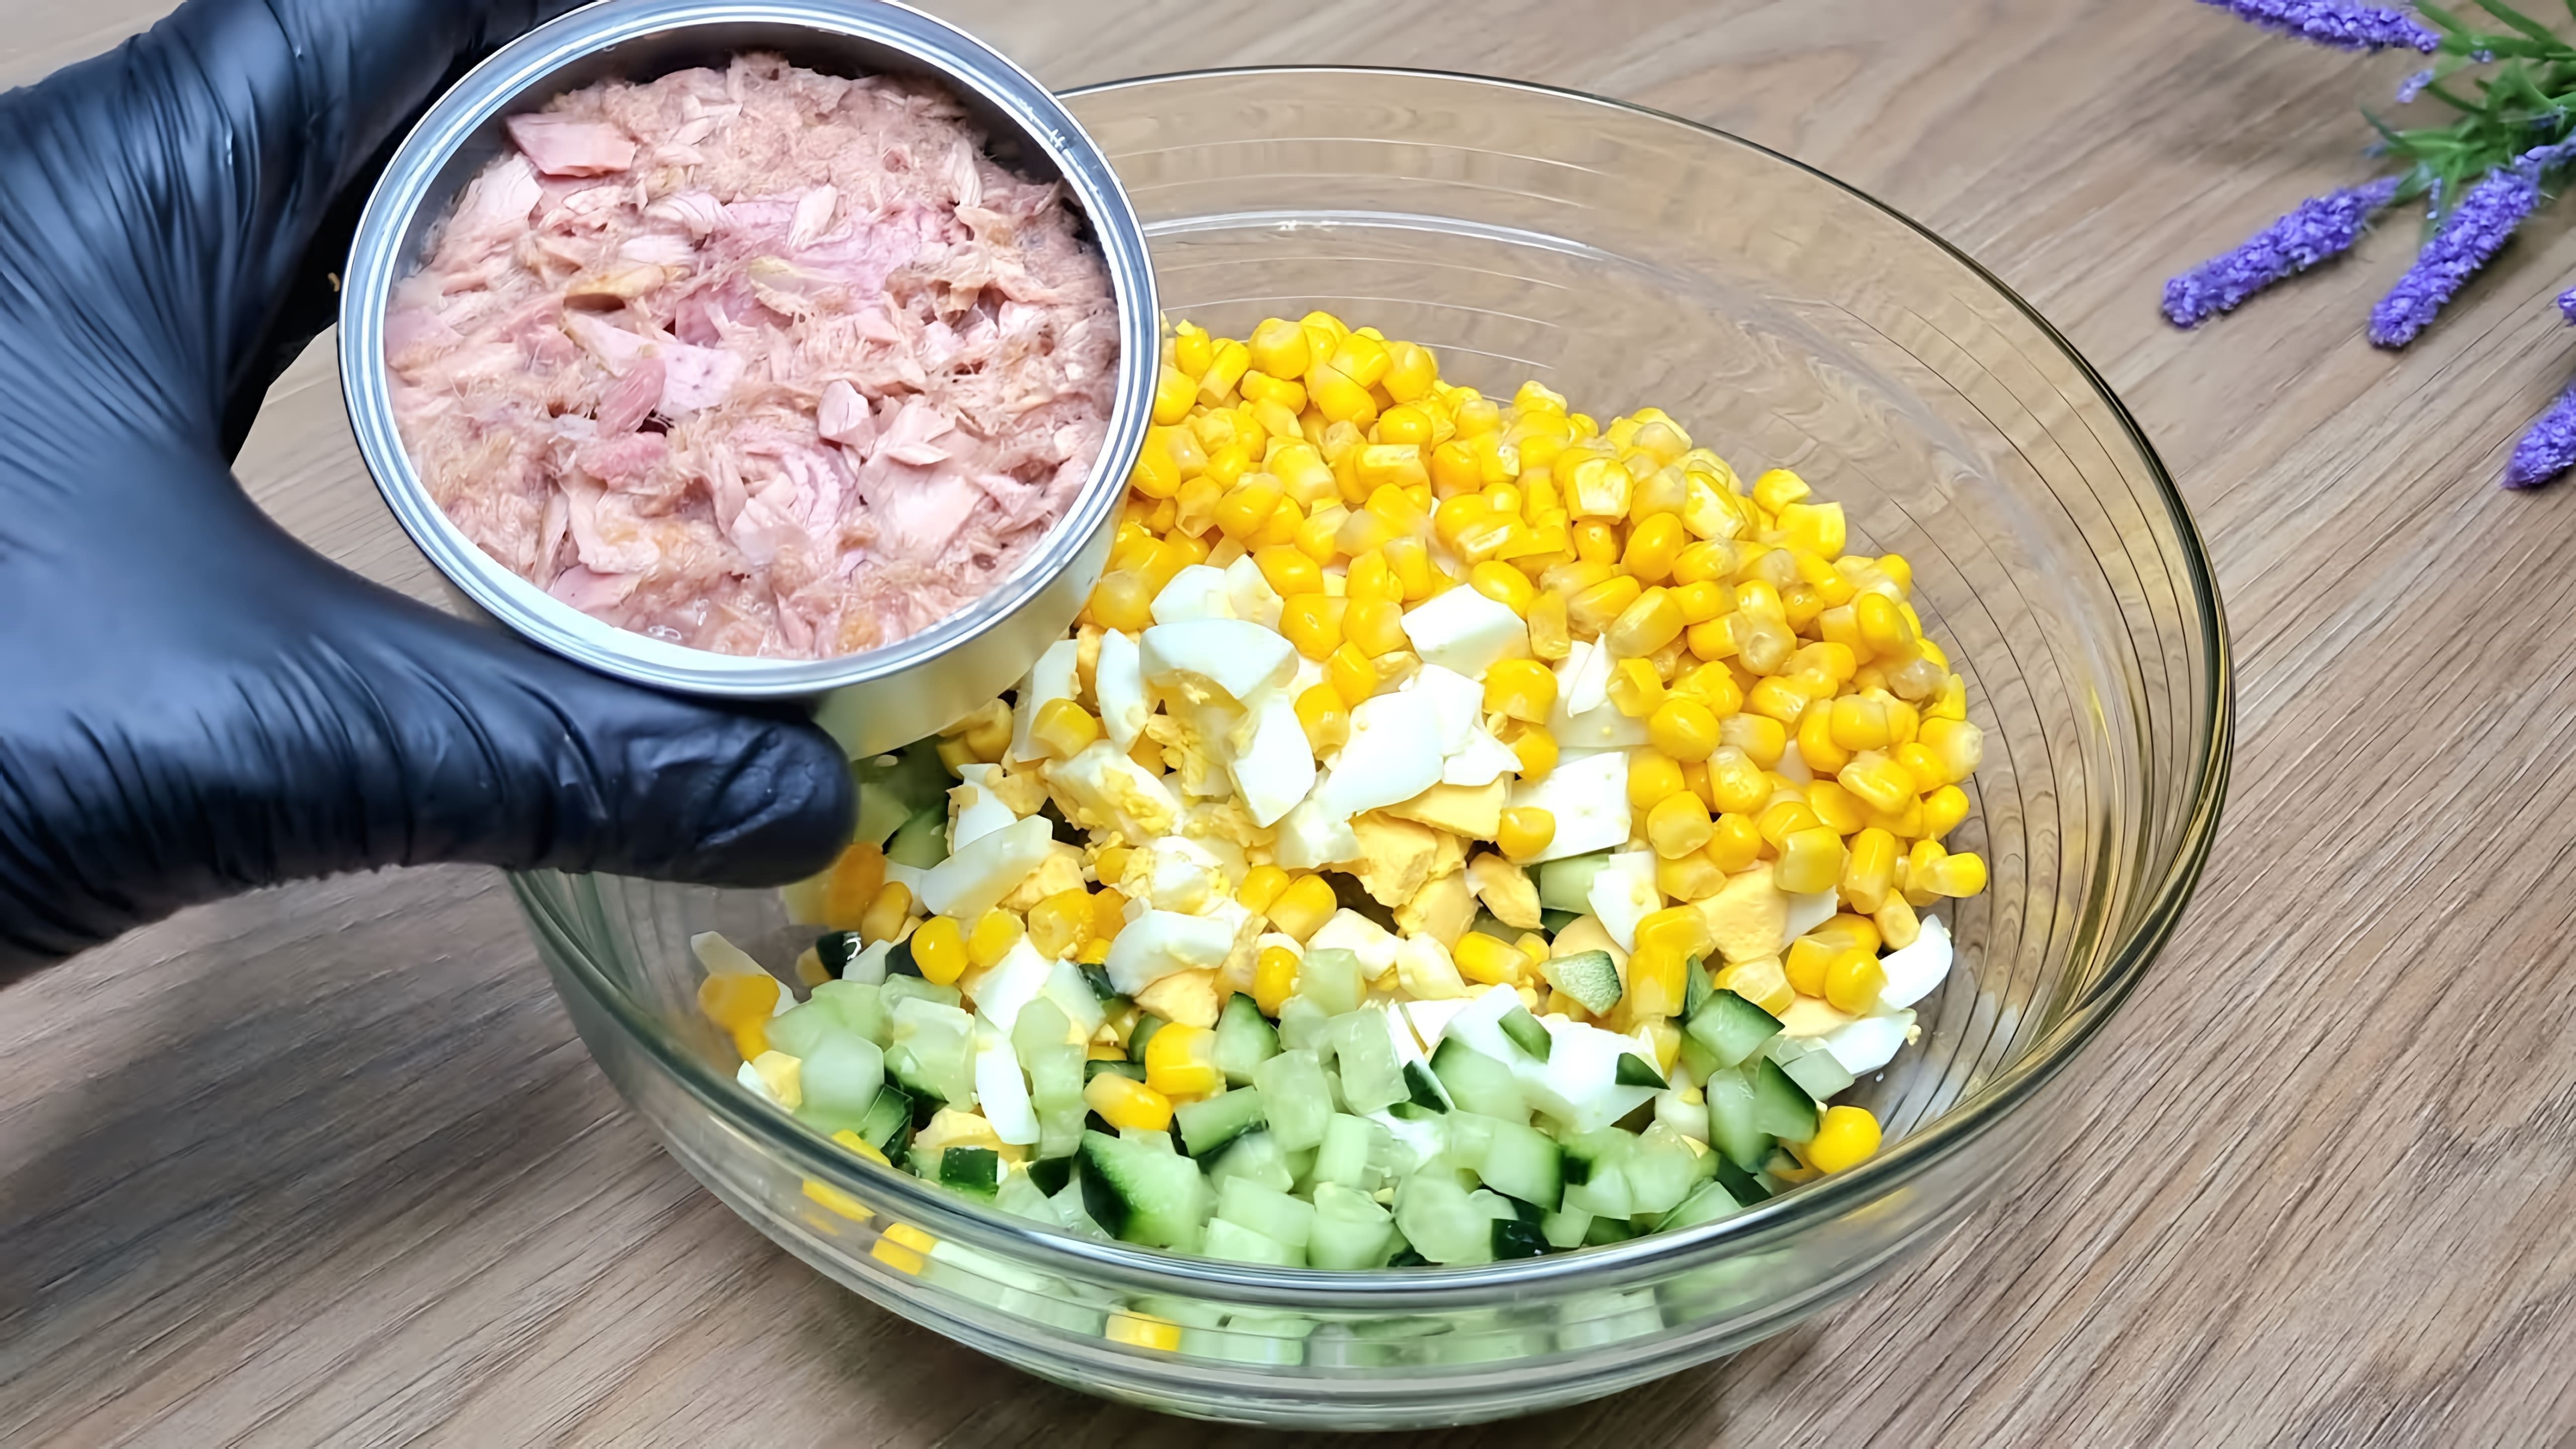 В этом видео демонстрируется простой и быстрый рецепт салата на основе консервированного тунца, огурцов, яиц и кукурузы